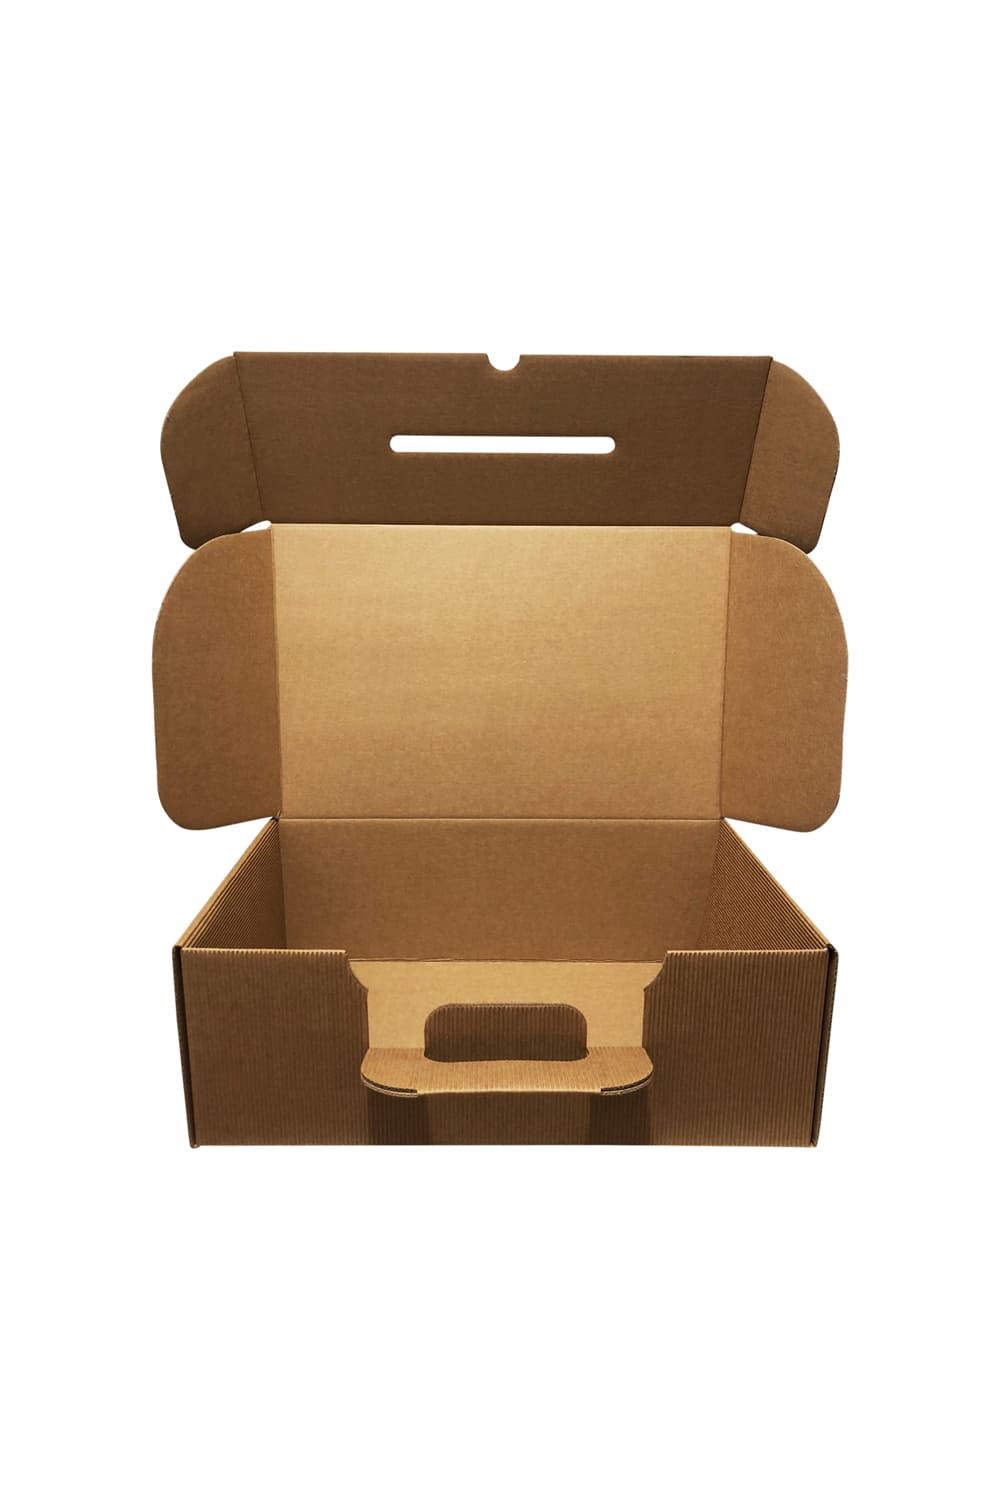 Der hochwertige Kartonkoffer ist aus stabiler Wellpappe. Der umweltfreundliche Kartonkoffer kann problemlos getragen und mehrmals verwendet werden. Eine originelle und edle Geschenkverpackung fuer ein Geschenkset. Der Wellpappe Koffer ist perfekt fuer ein Geschenkset.